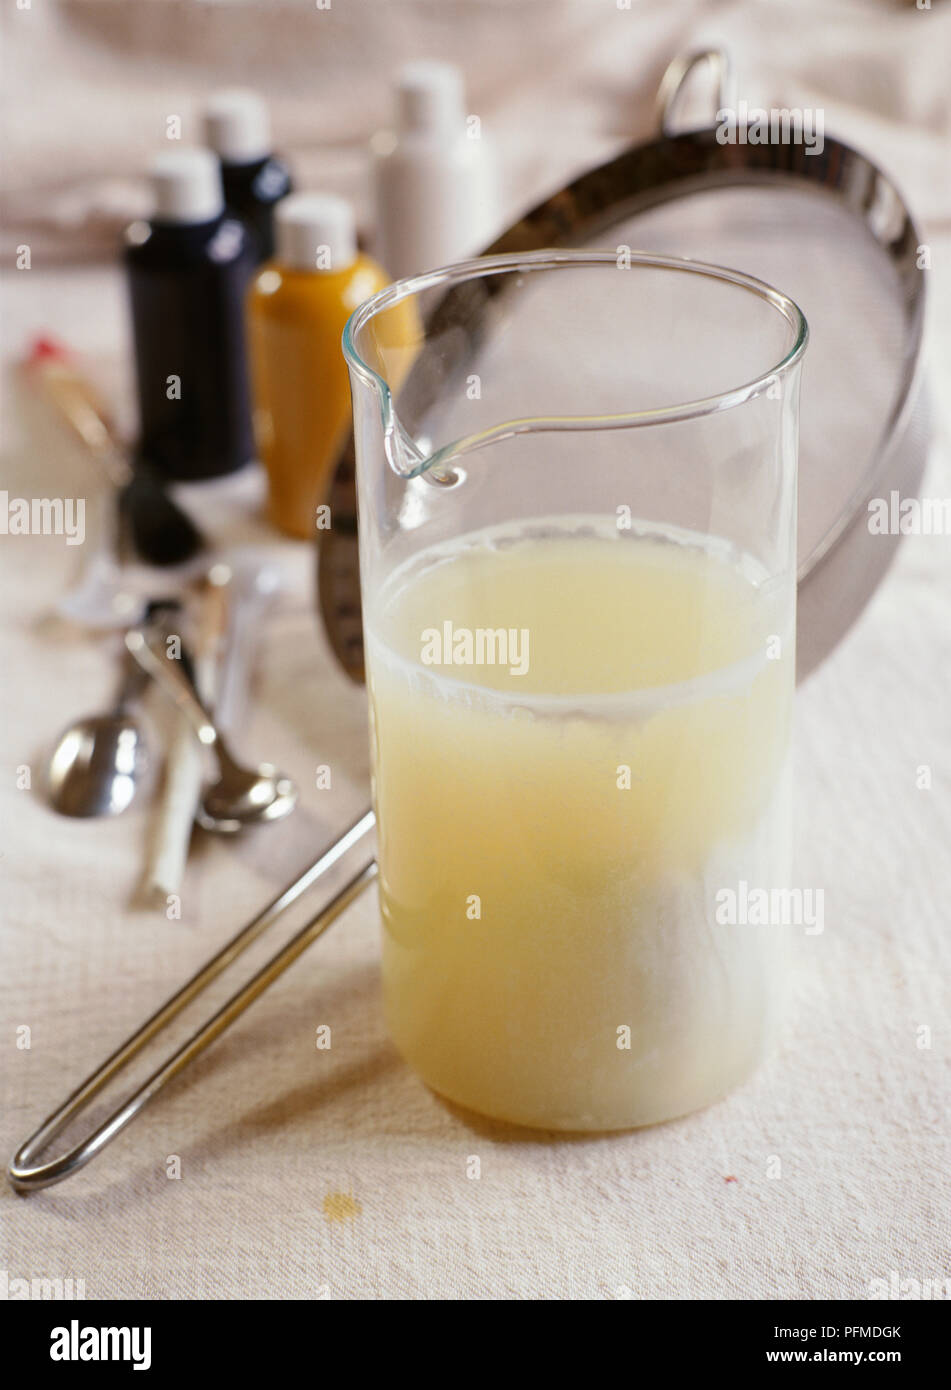 Glas Krug Milch Quark und Molke Milch Paint zu machen, hellgelbe Flüssigkeit mit weißem Quark, auf weiße Tischtuch; Metallsieb, kleine Farbtöpfe und Teelöffel im Hintergrund. Stockfoto